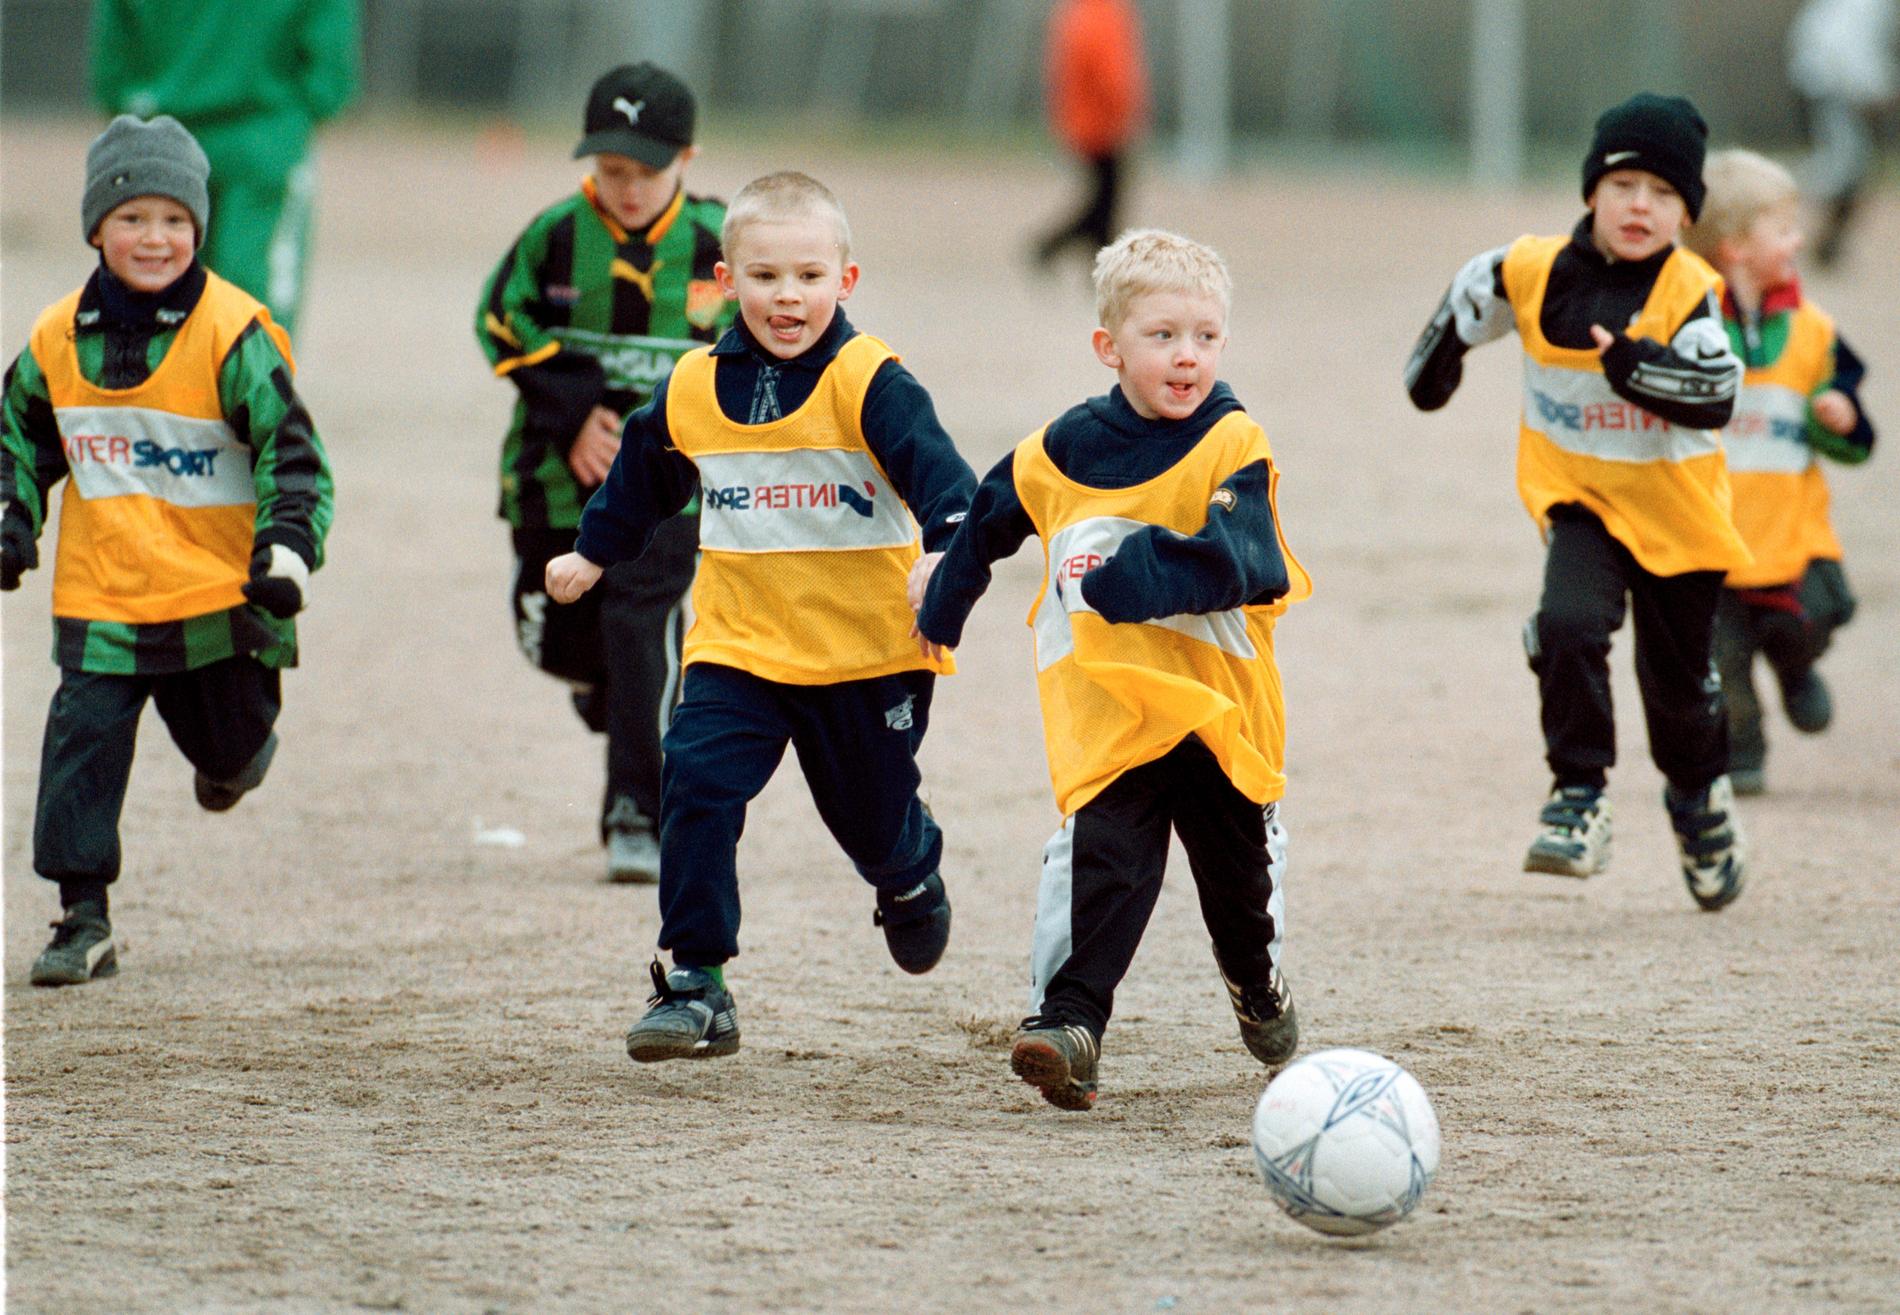 Gais fotbollsskola tränar fotboll – och blir smartare på köpet.